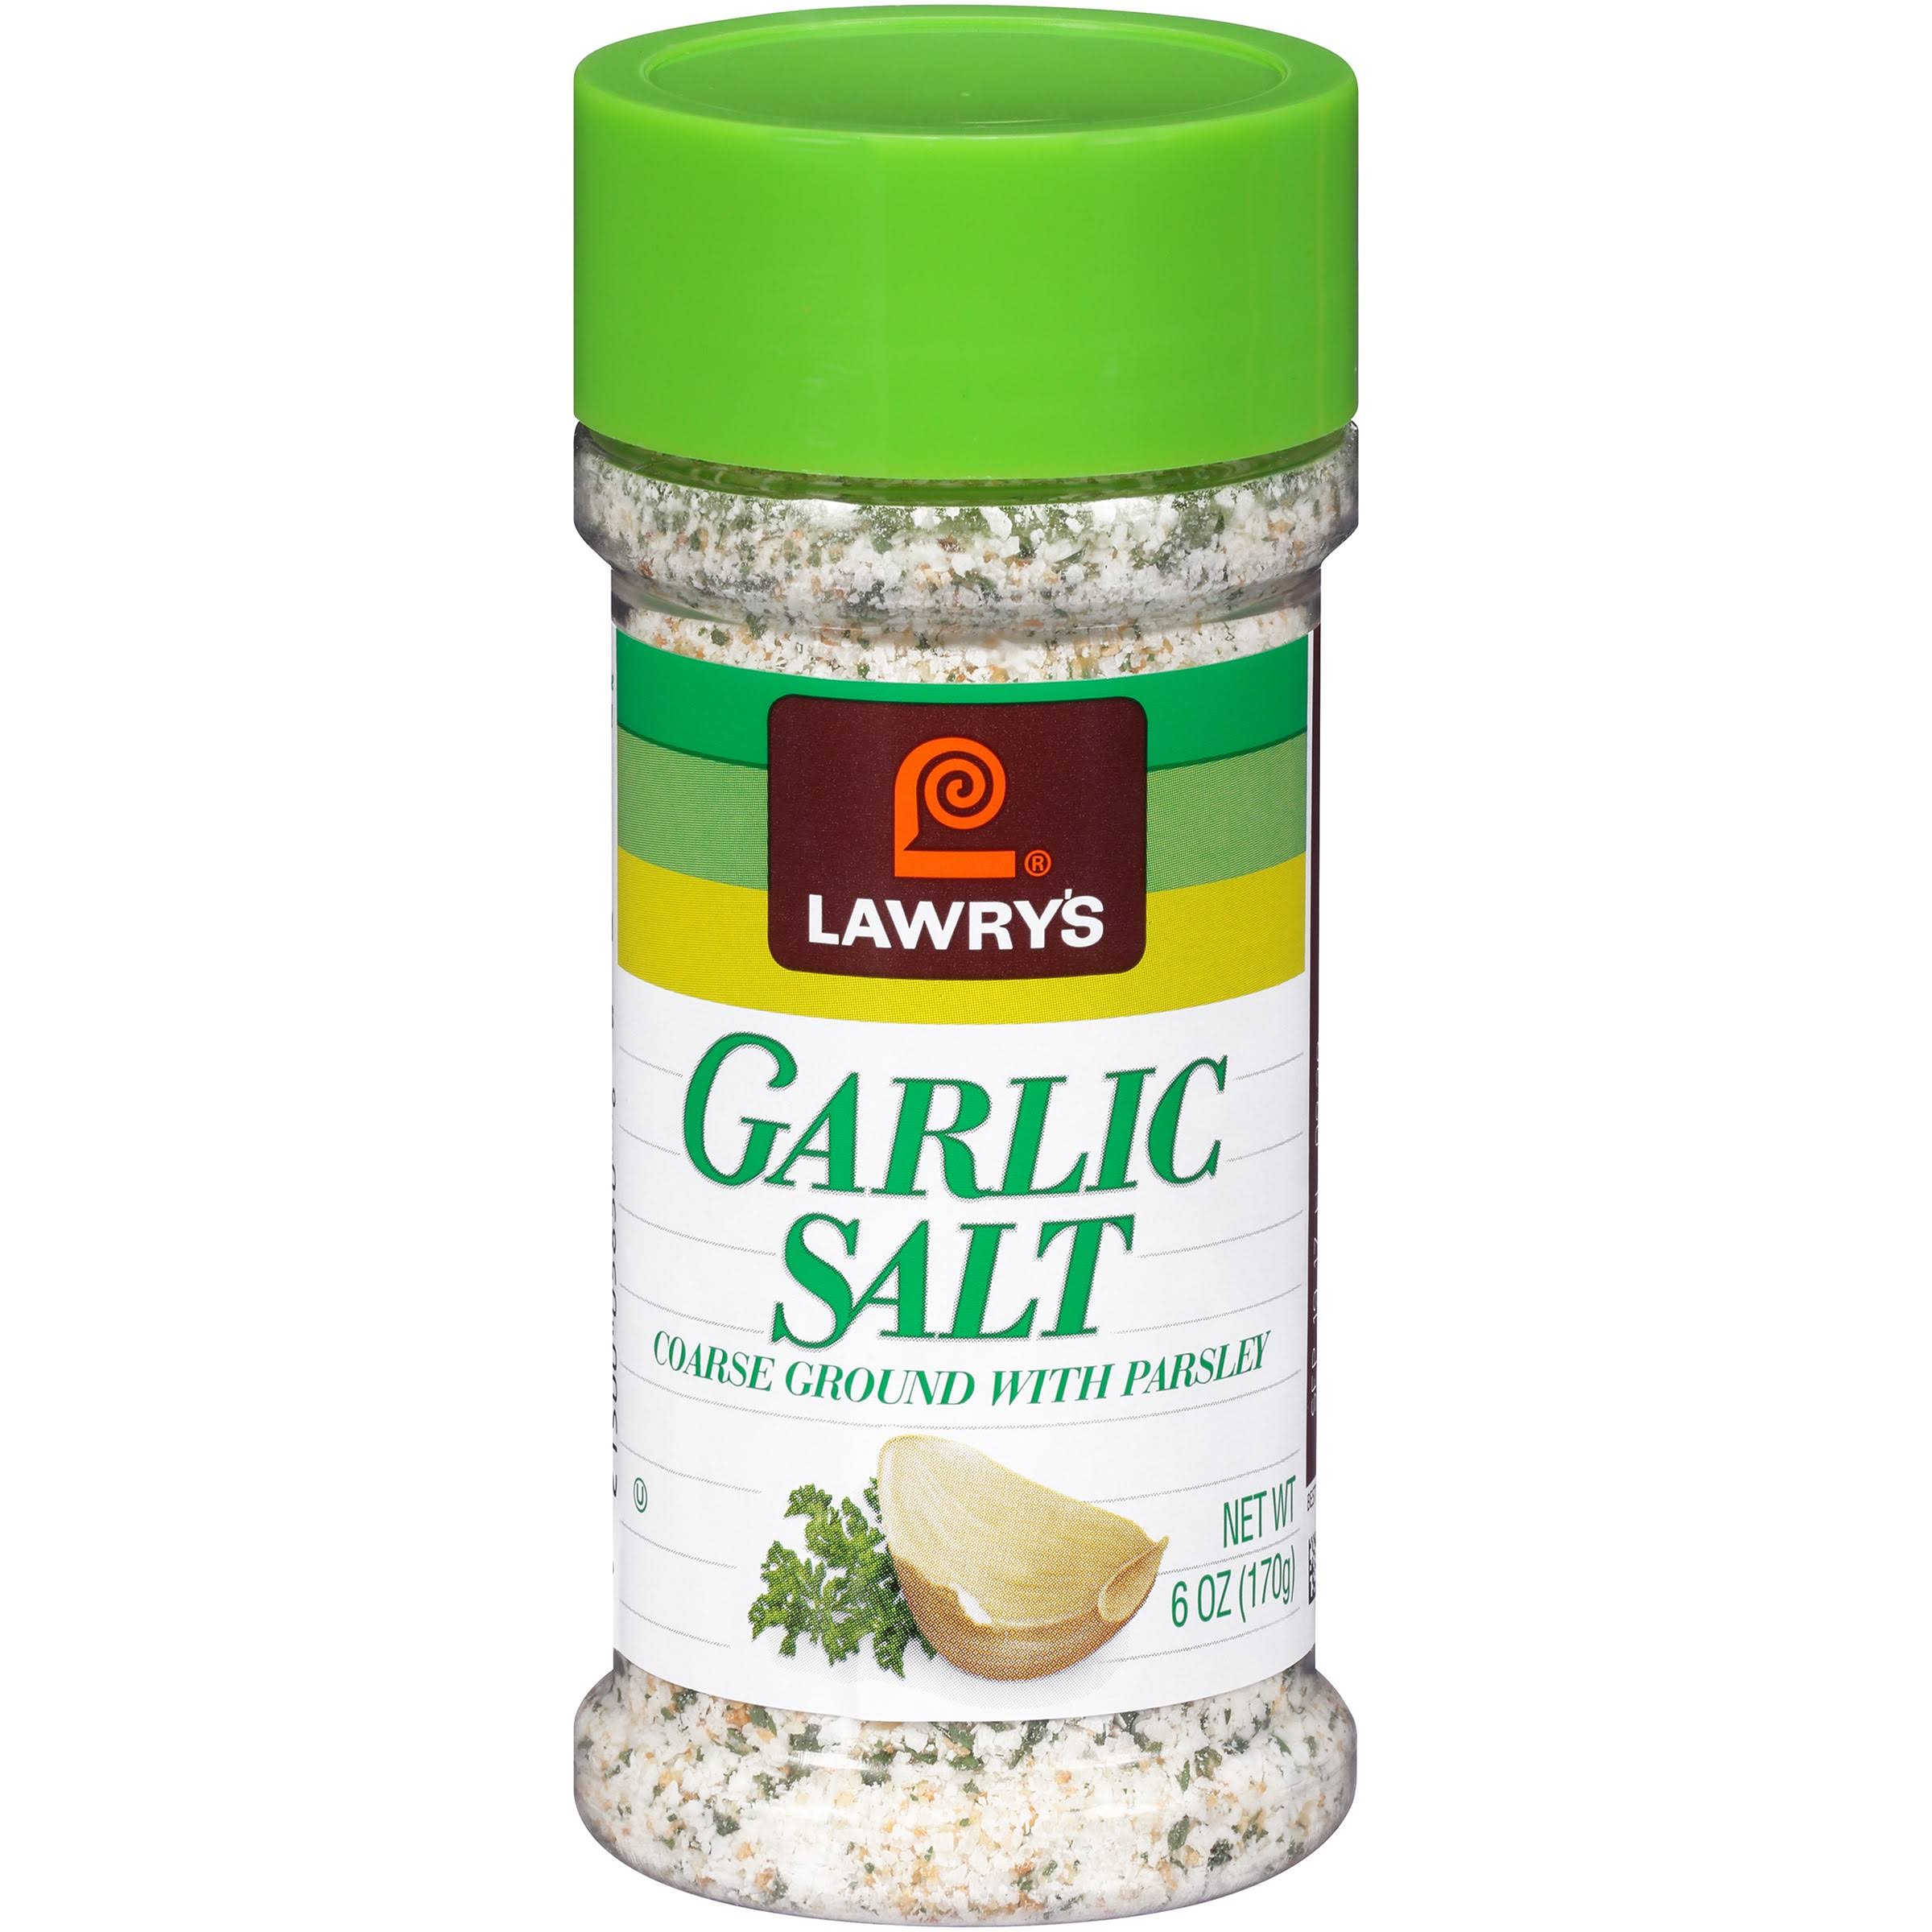 Lawry's Coarse Ground with Parsley Garlic Salt - 6oz